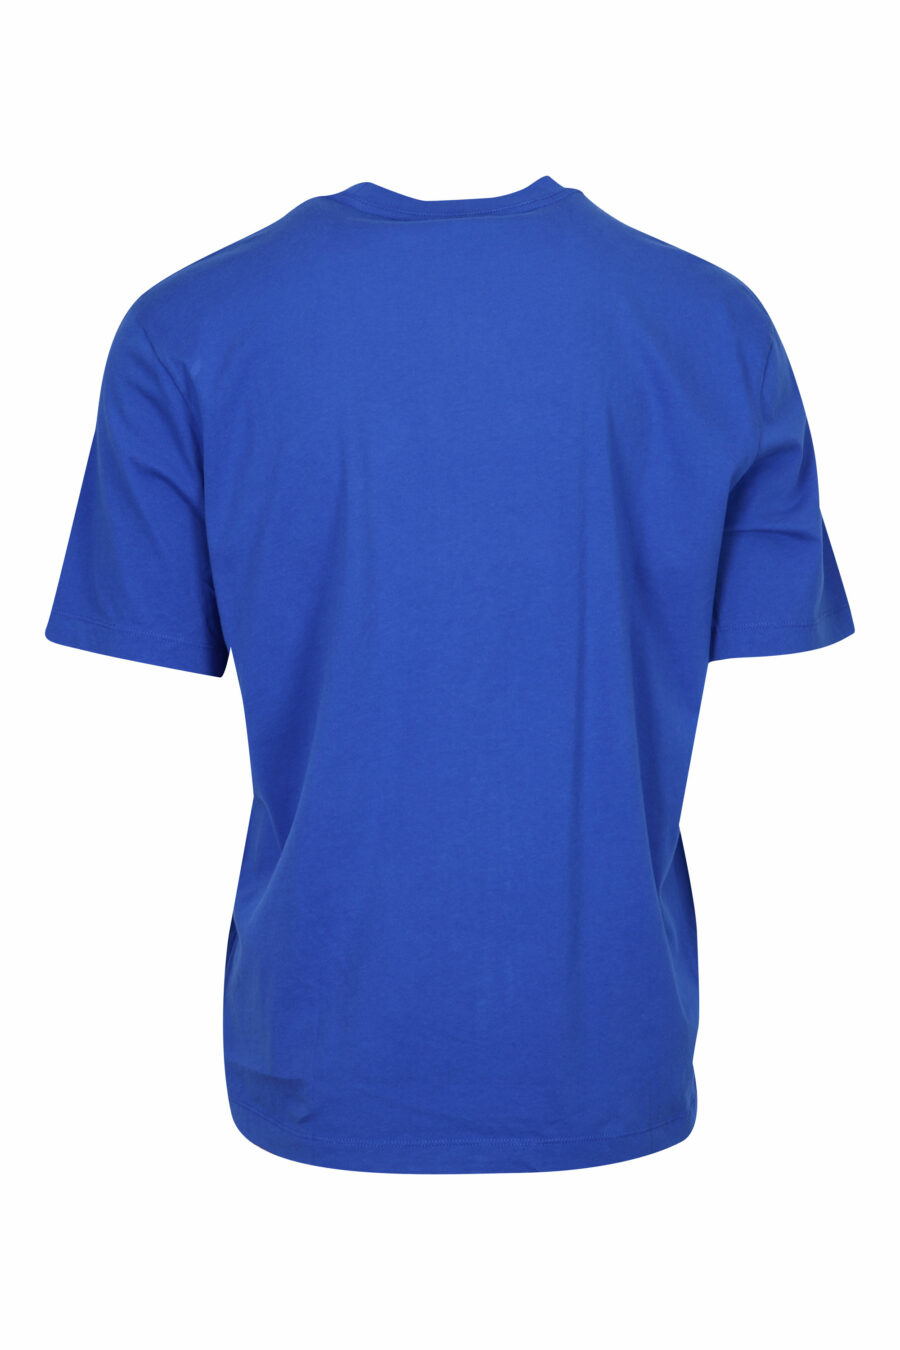 Blaues T-Shirt mit getragenem Schild Maxilogo - 8058610830472 1